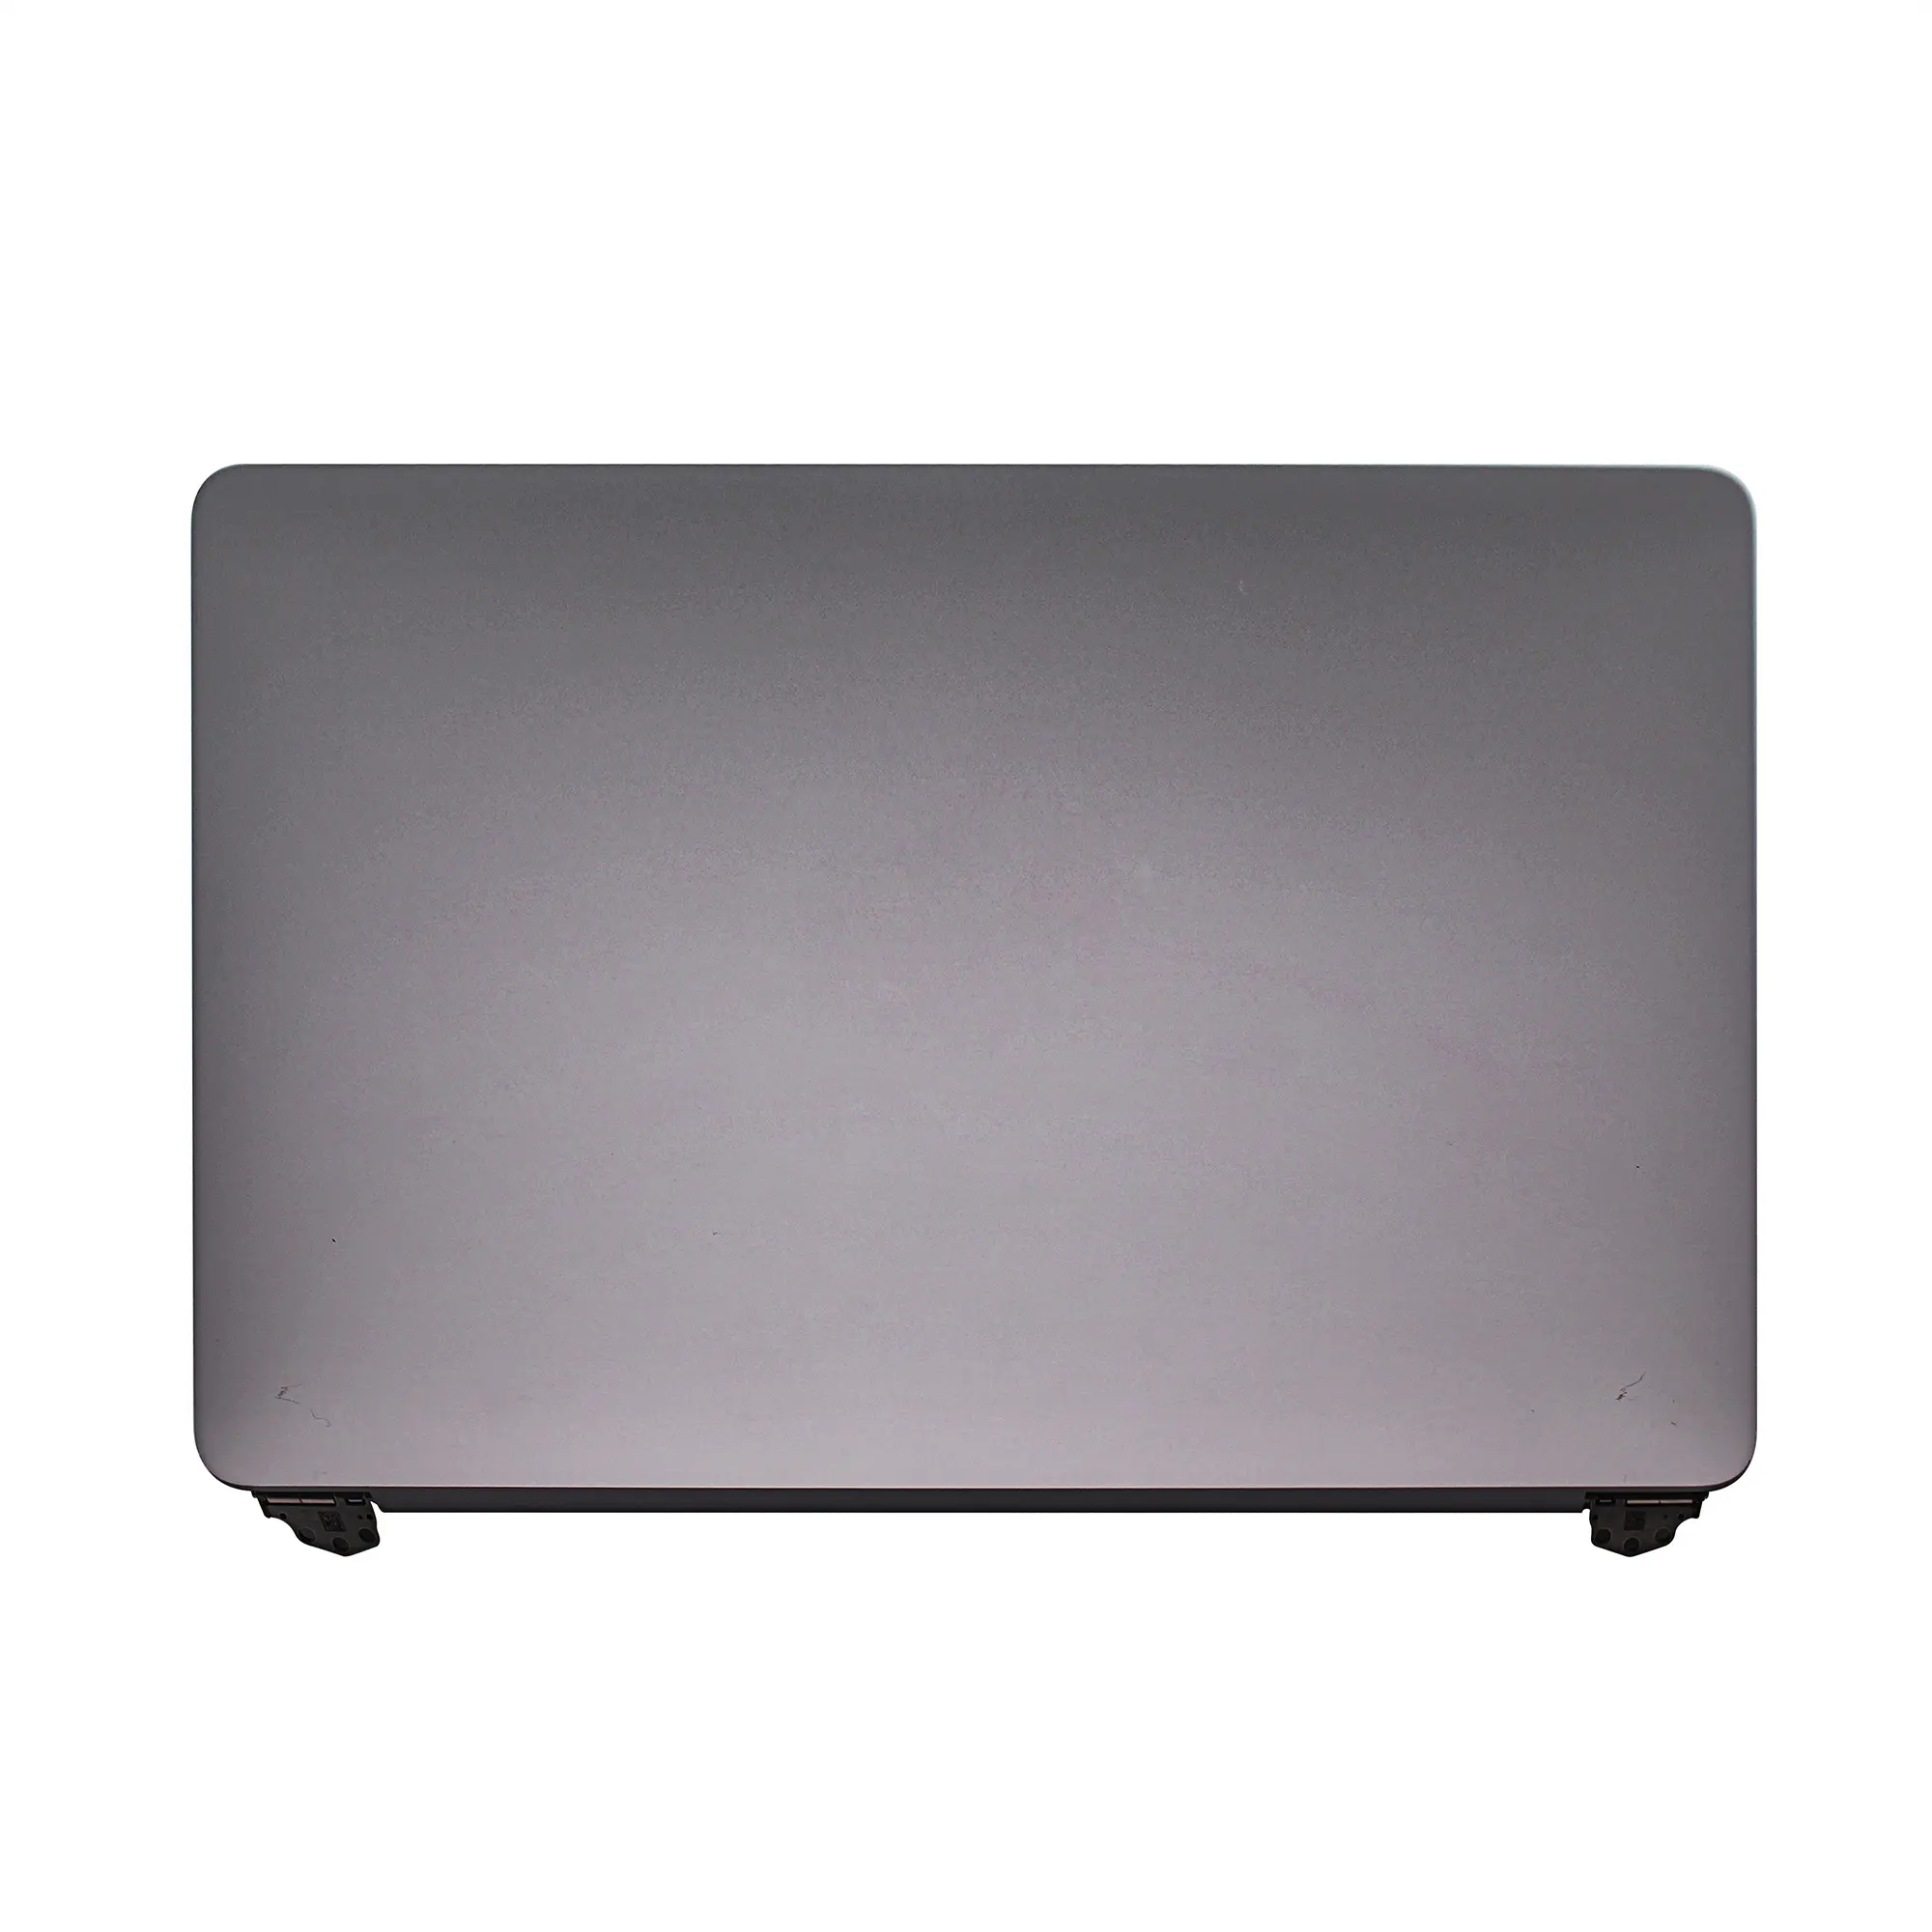 Восстановленный Новый A1706 A1708 ЖК-дисплей серого/серебряного цвета для Macbook A1706, полный ЖК-экран в сборе, конец 2016 Mid 2017 661-05096